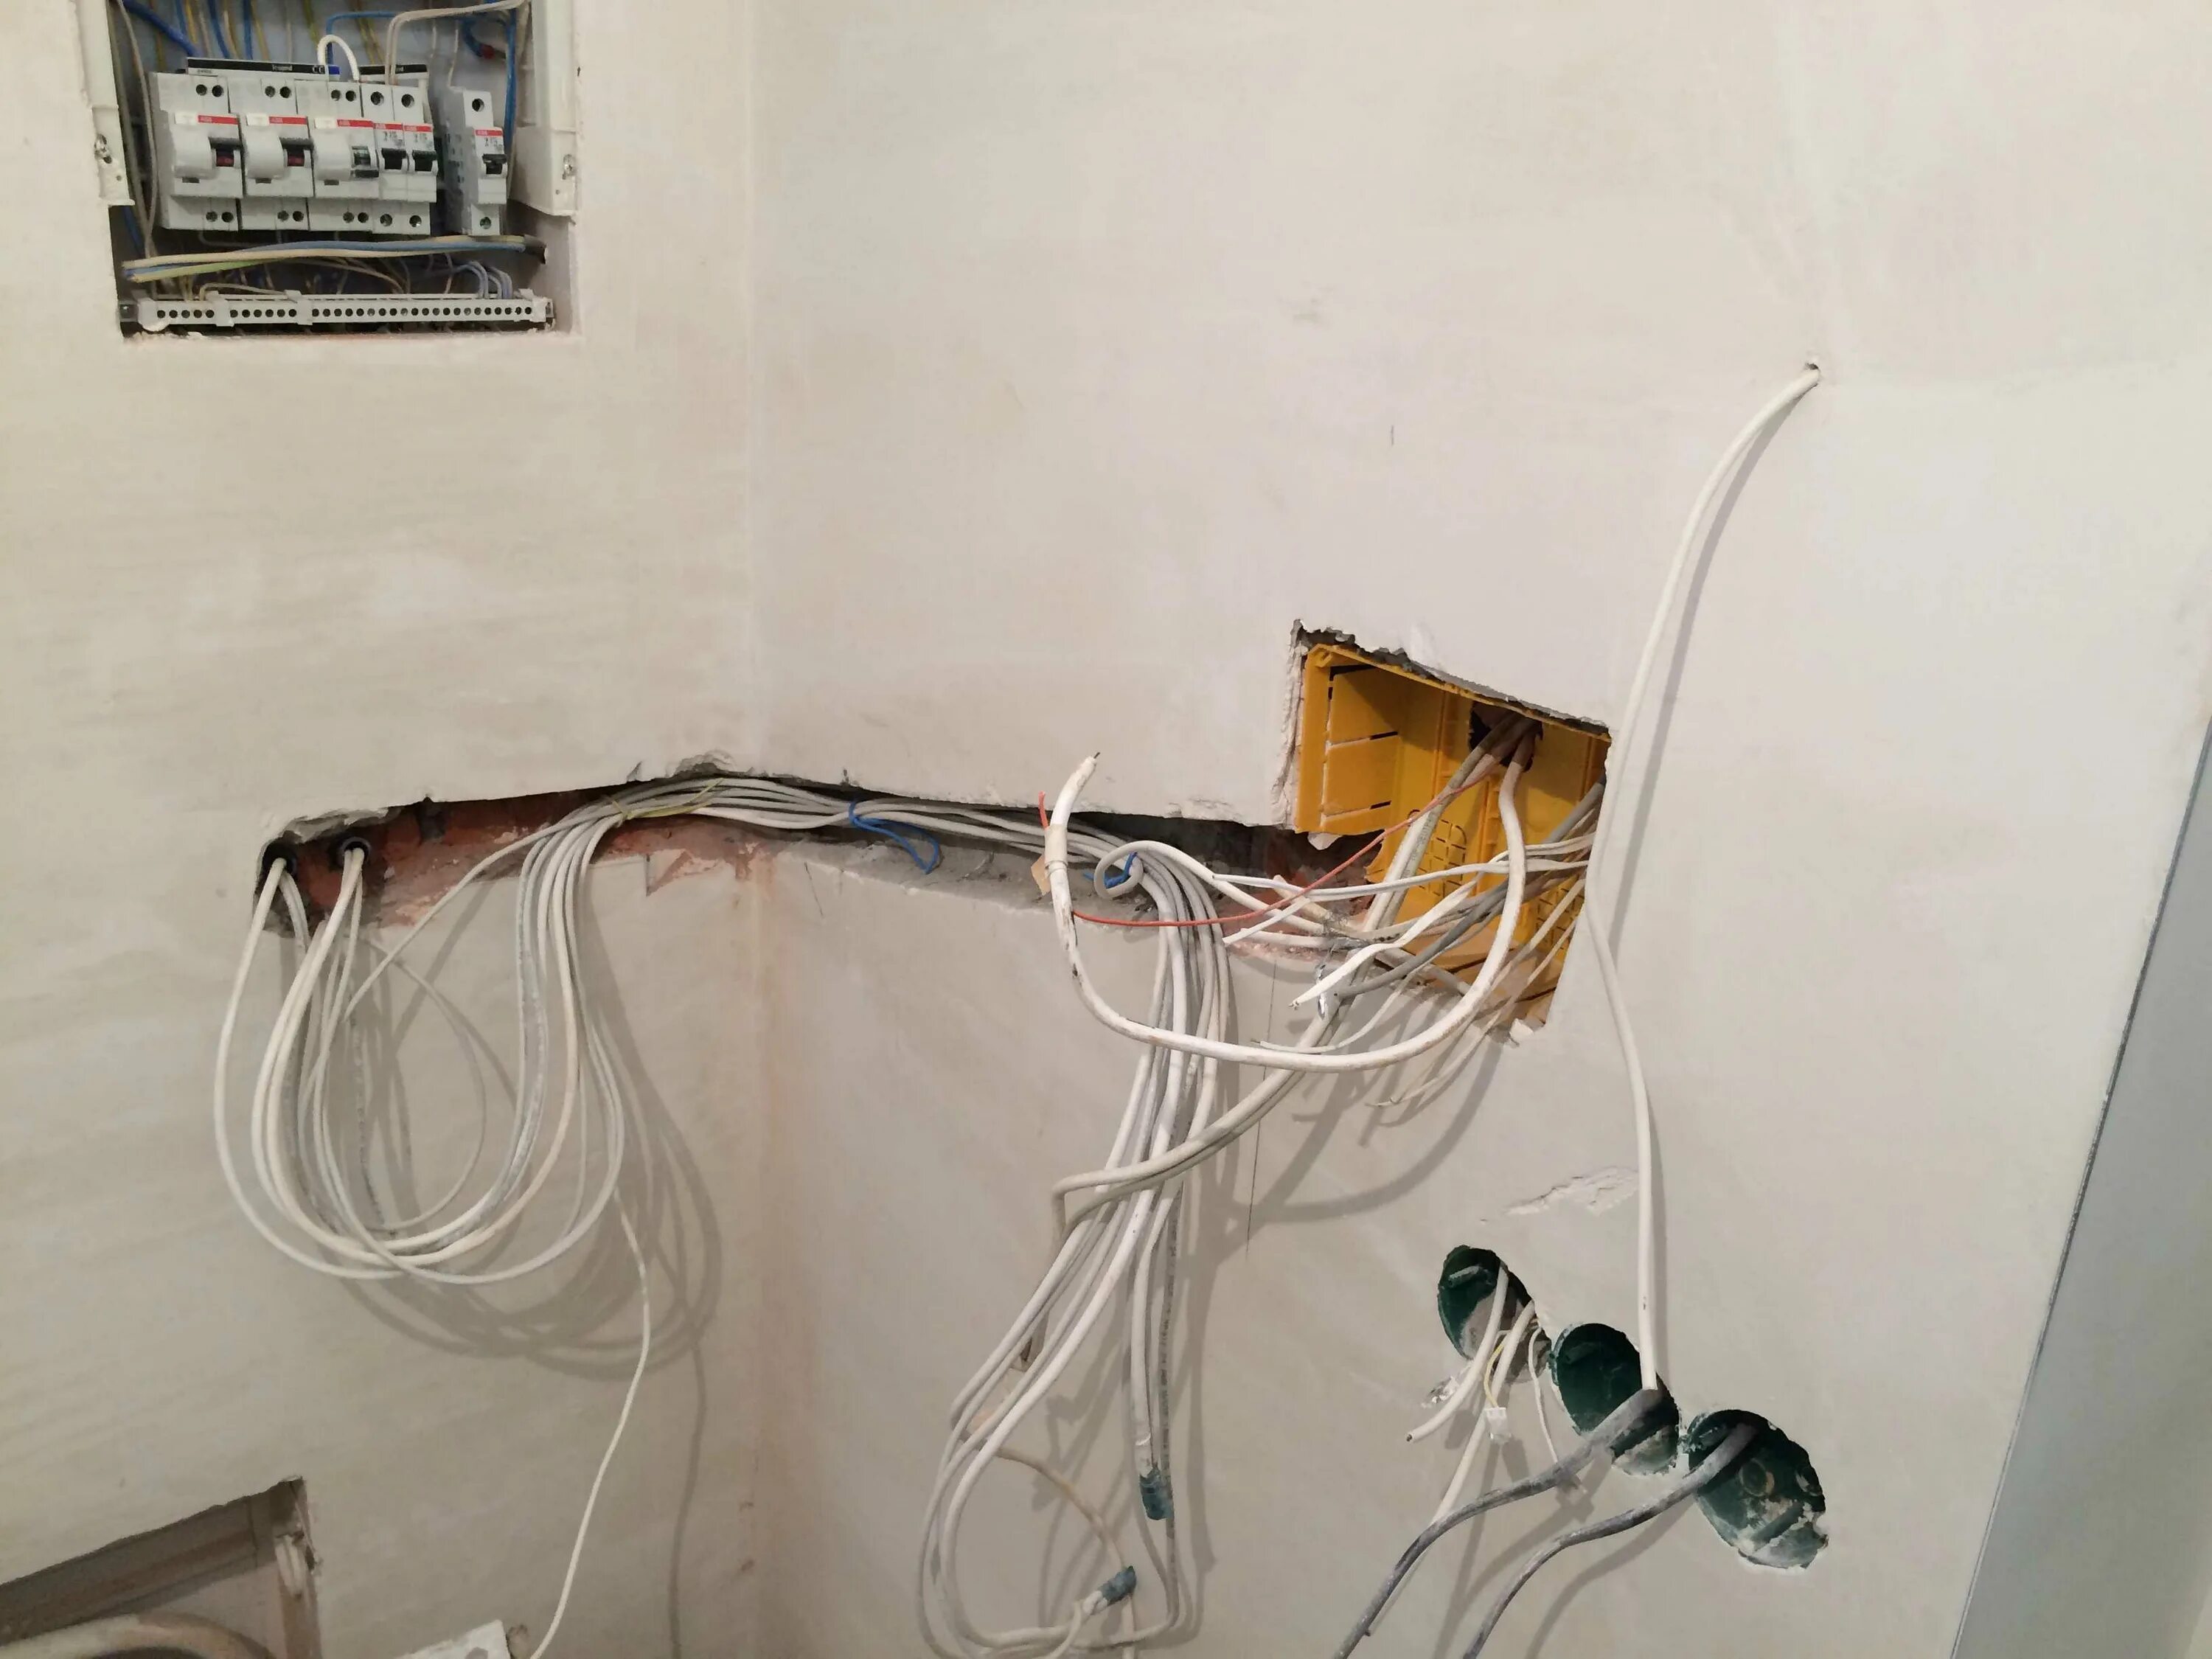 Монтаж электропроводки в квартире. Кабель на стене. Электрика в квартире. Провода для квартирной электропроводки.